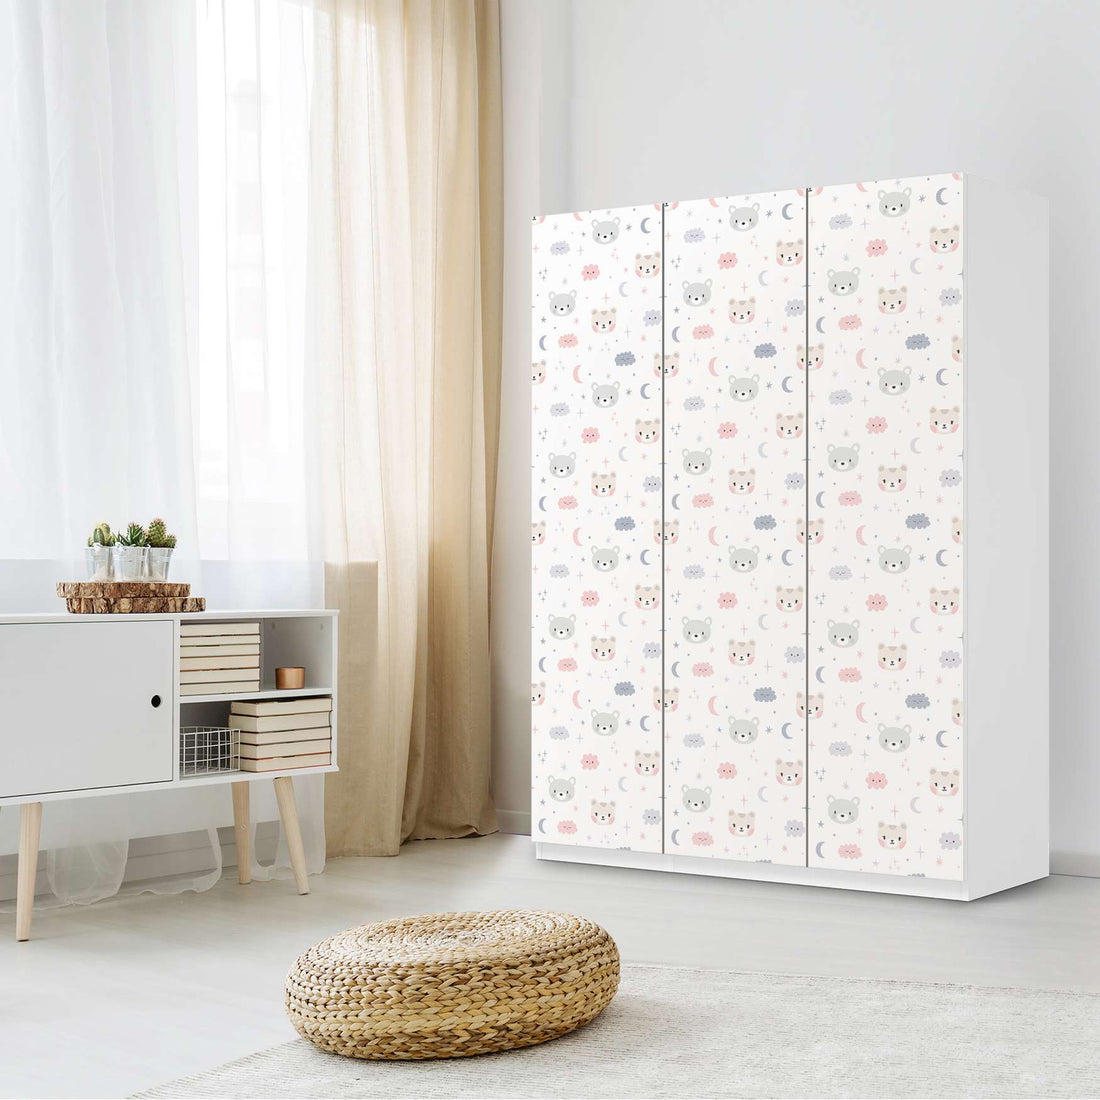 Folie für Möbel Sweet Dreams - IKEA Pax Schrank 201 cm Höhe - 3 Türen - Kinderzimmer